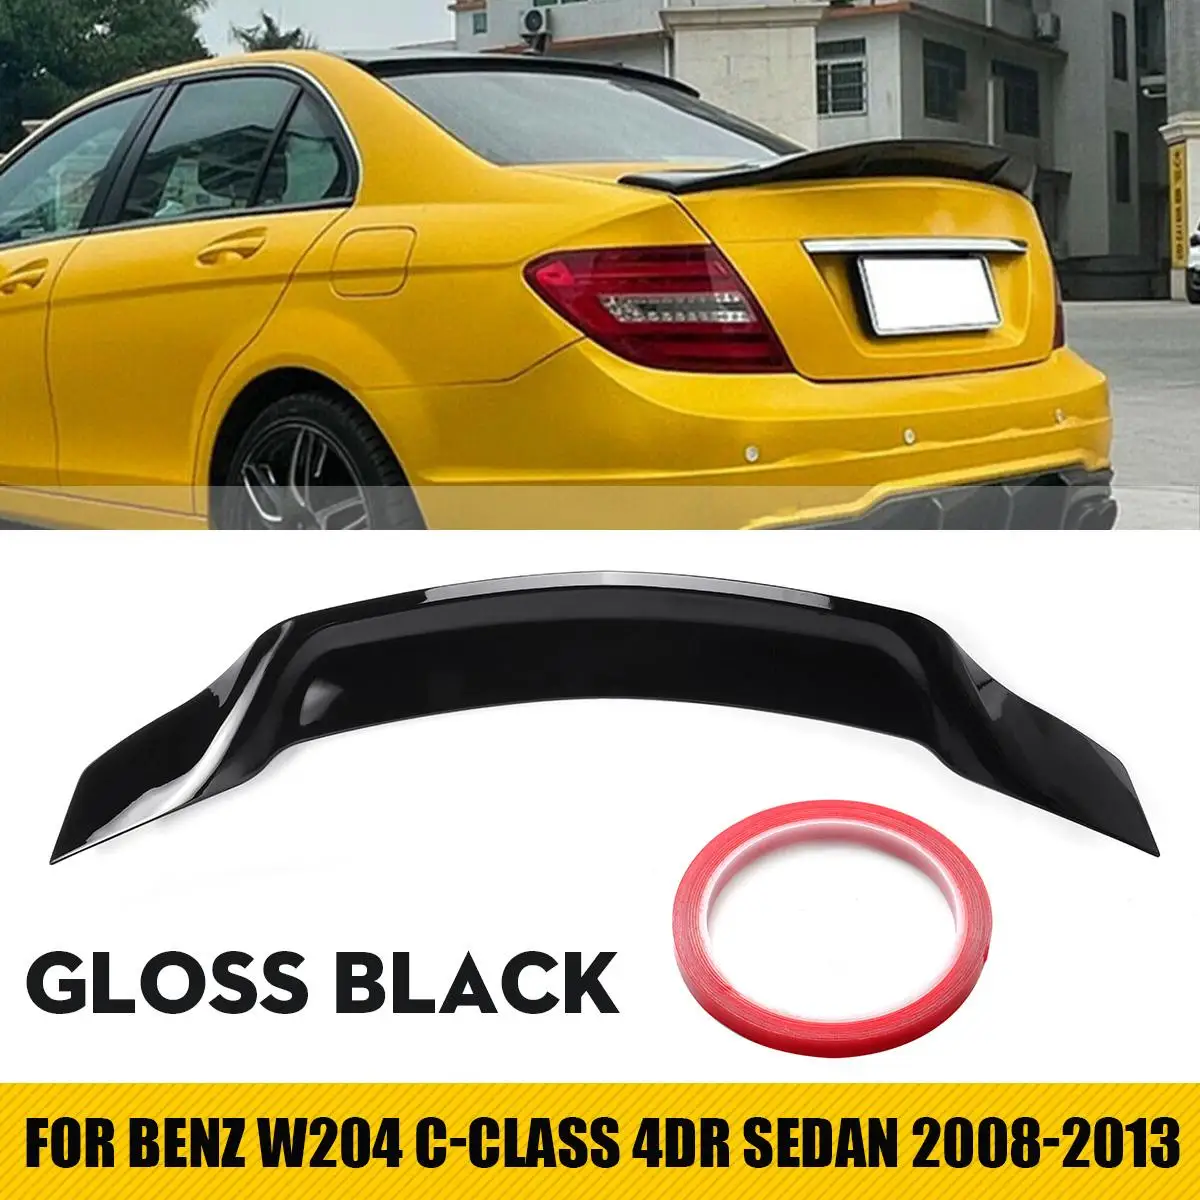 

Для Benz W204 C-class 4dr Sedan 2008-13 глянцевый черный стильный спойлер из ABS углеродного волокна для багажника автомобиля